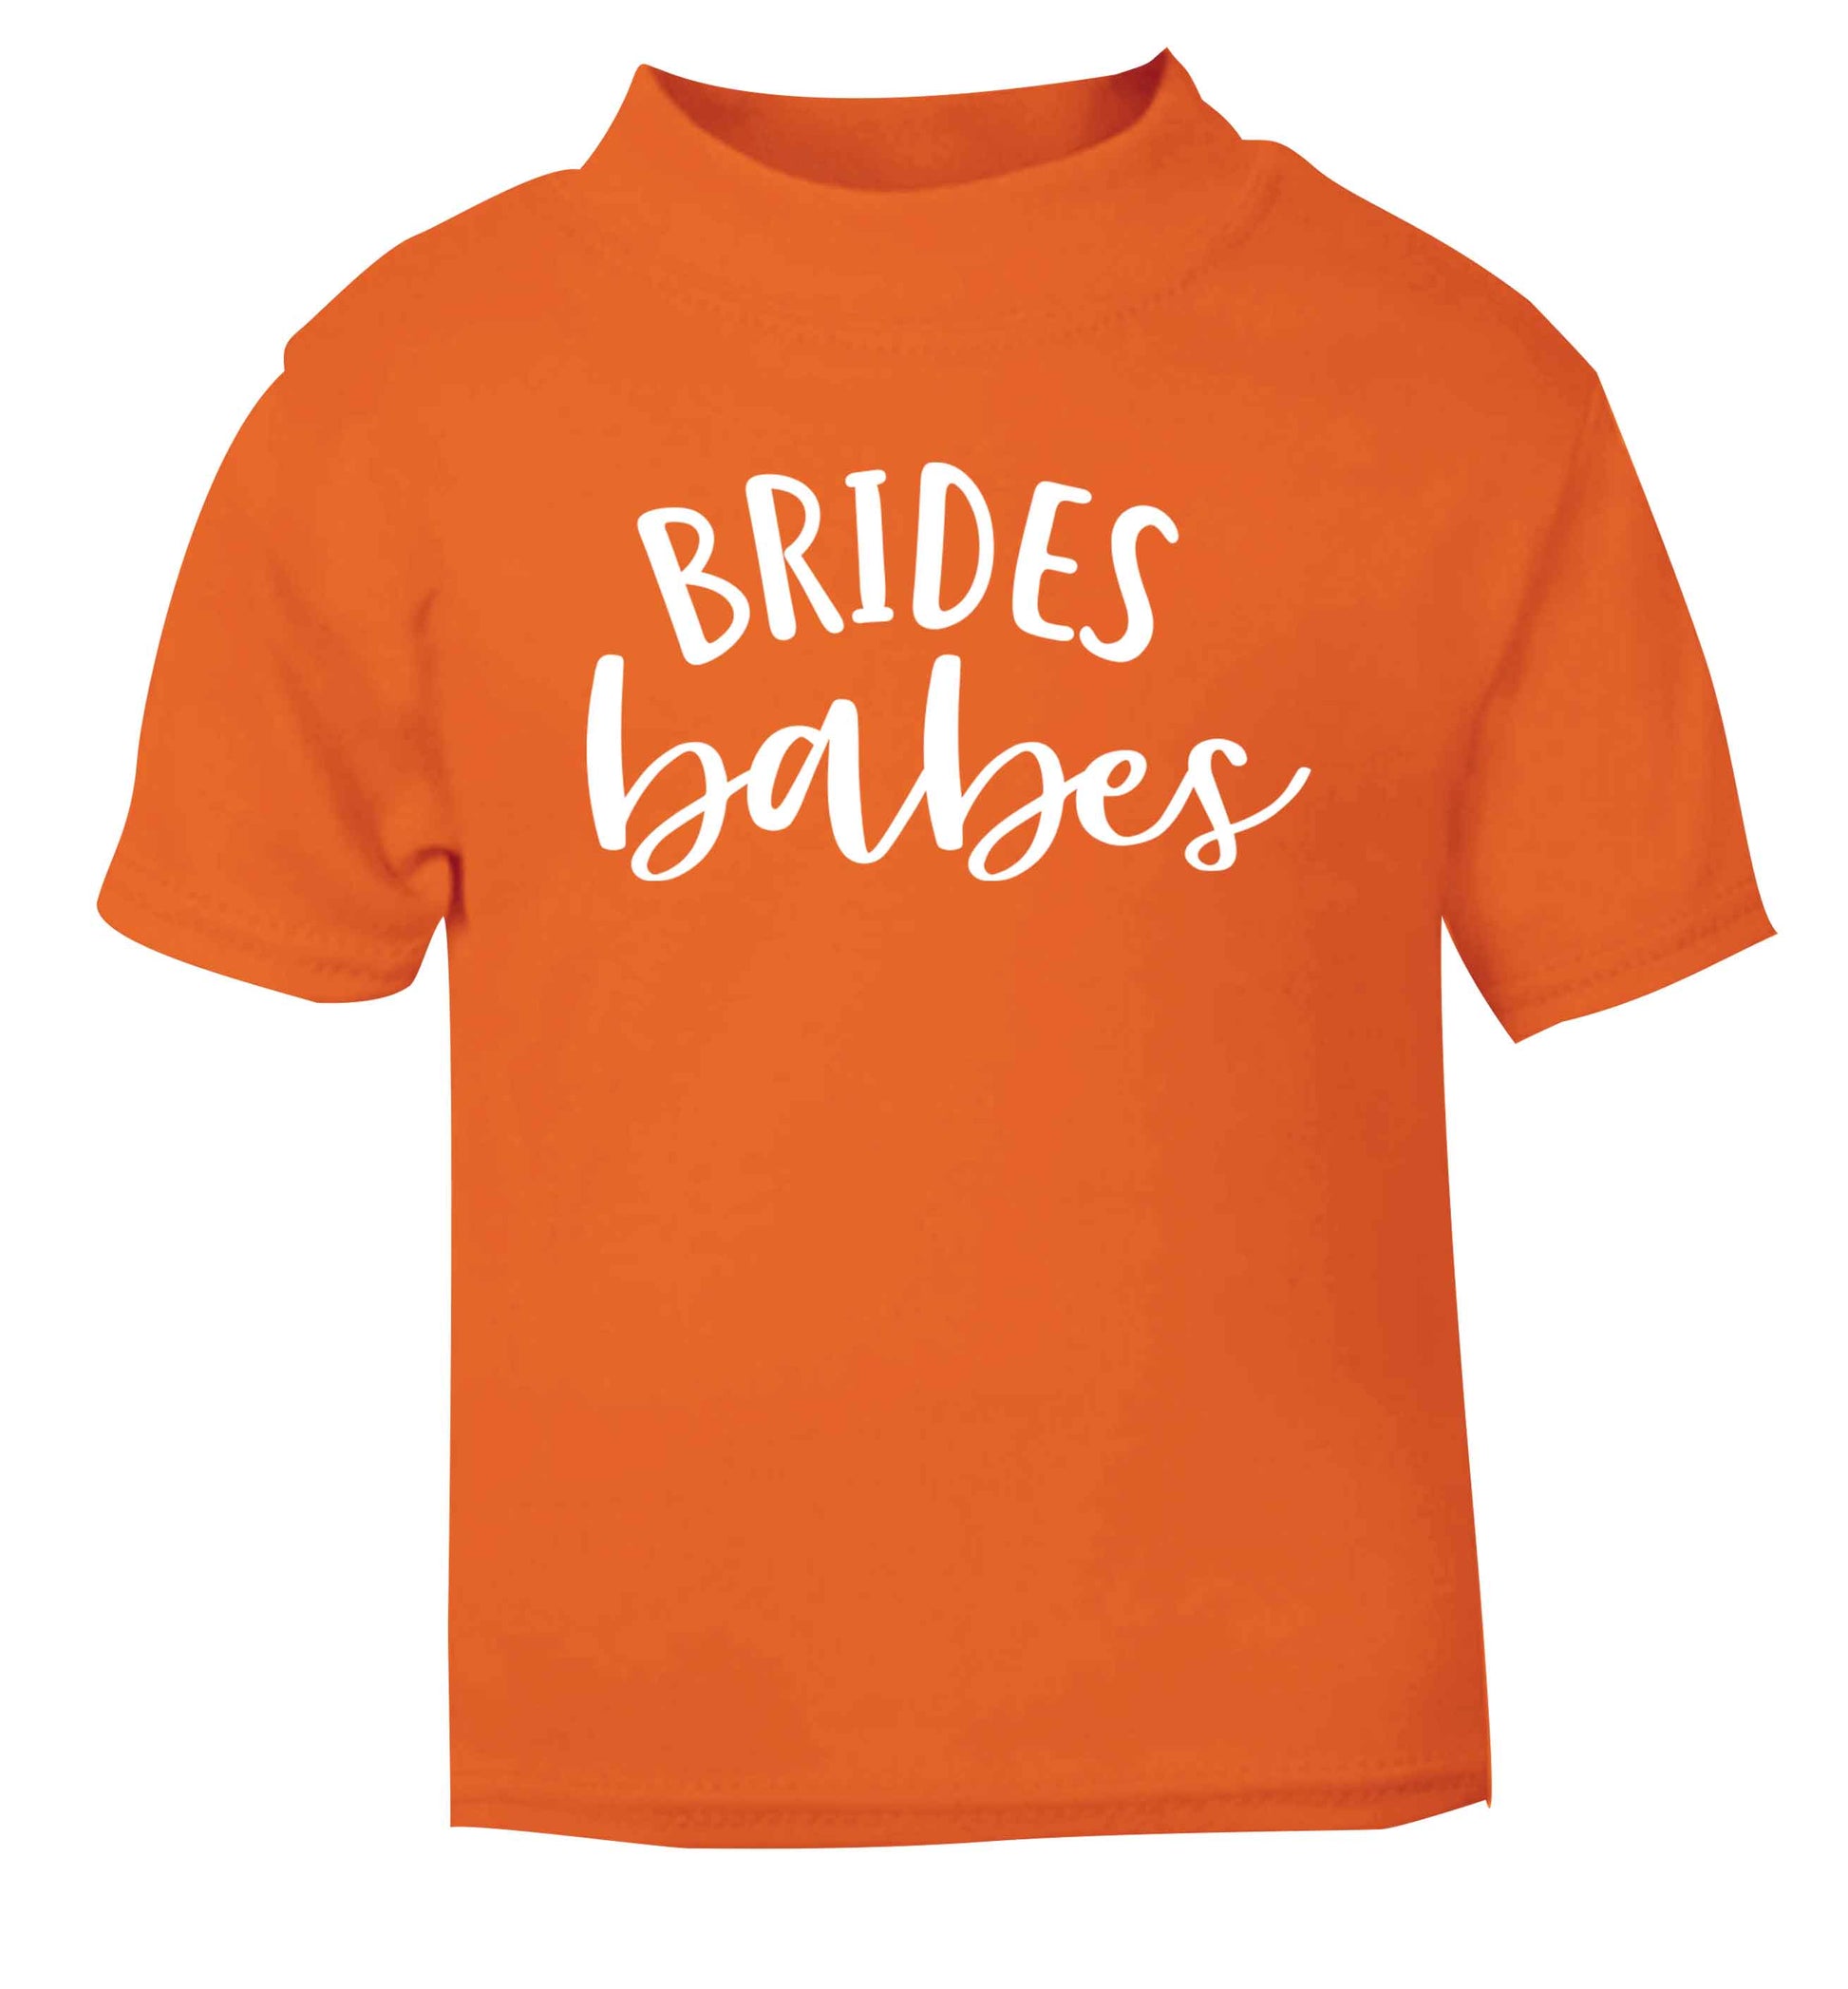 Brides Babes orange Baby Toddler Tshirt 2 Years